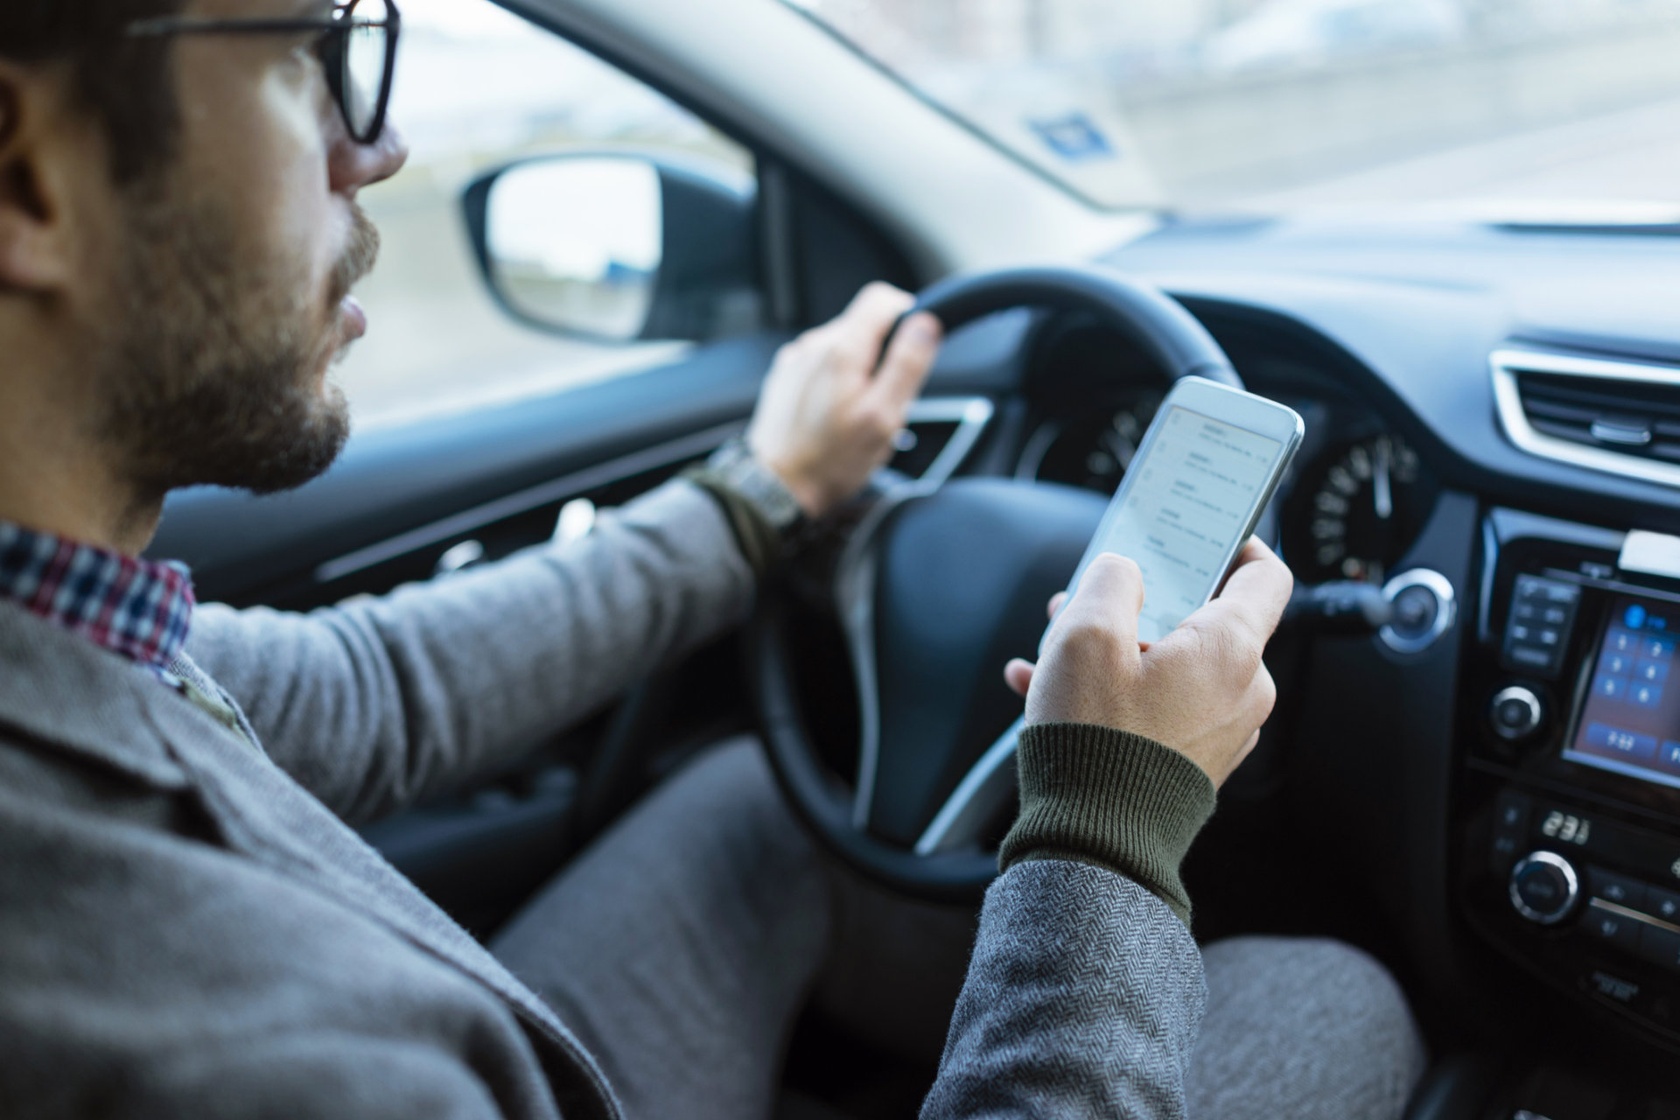 Tego nie rób. Jazda autem z telefonem w ręce nie tylko jest niezgodna z przepisami, ale także (a może przede wszystkim) stanowi olbrzymie zagrożenie dla bezpieczeństwa: jak trzymać kierownicę